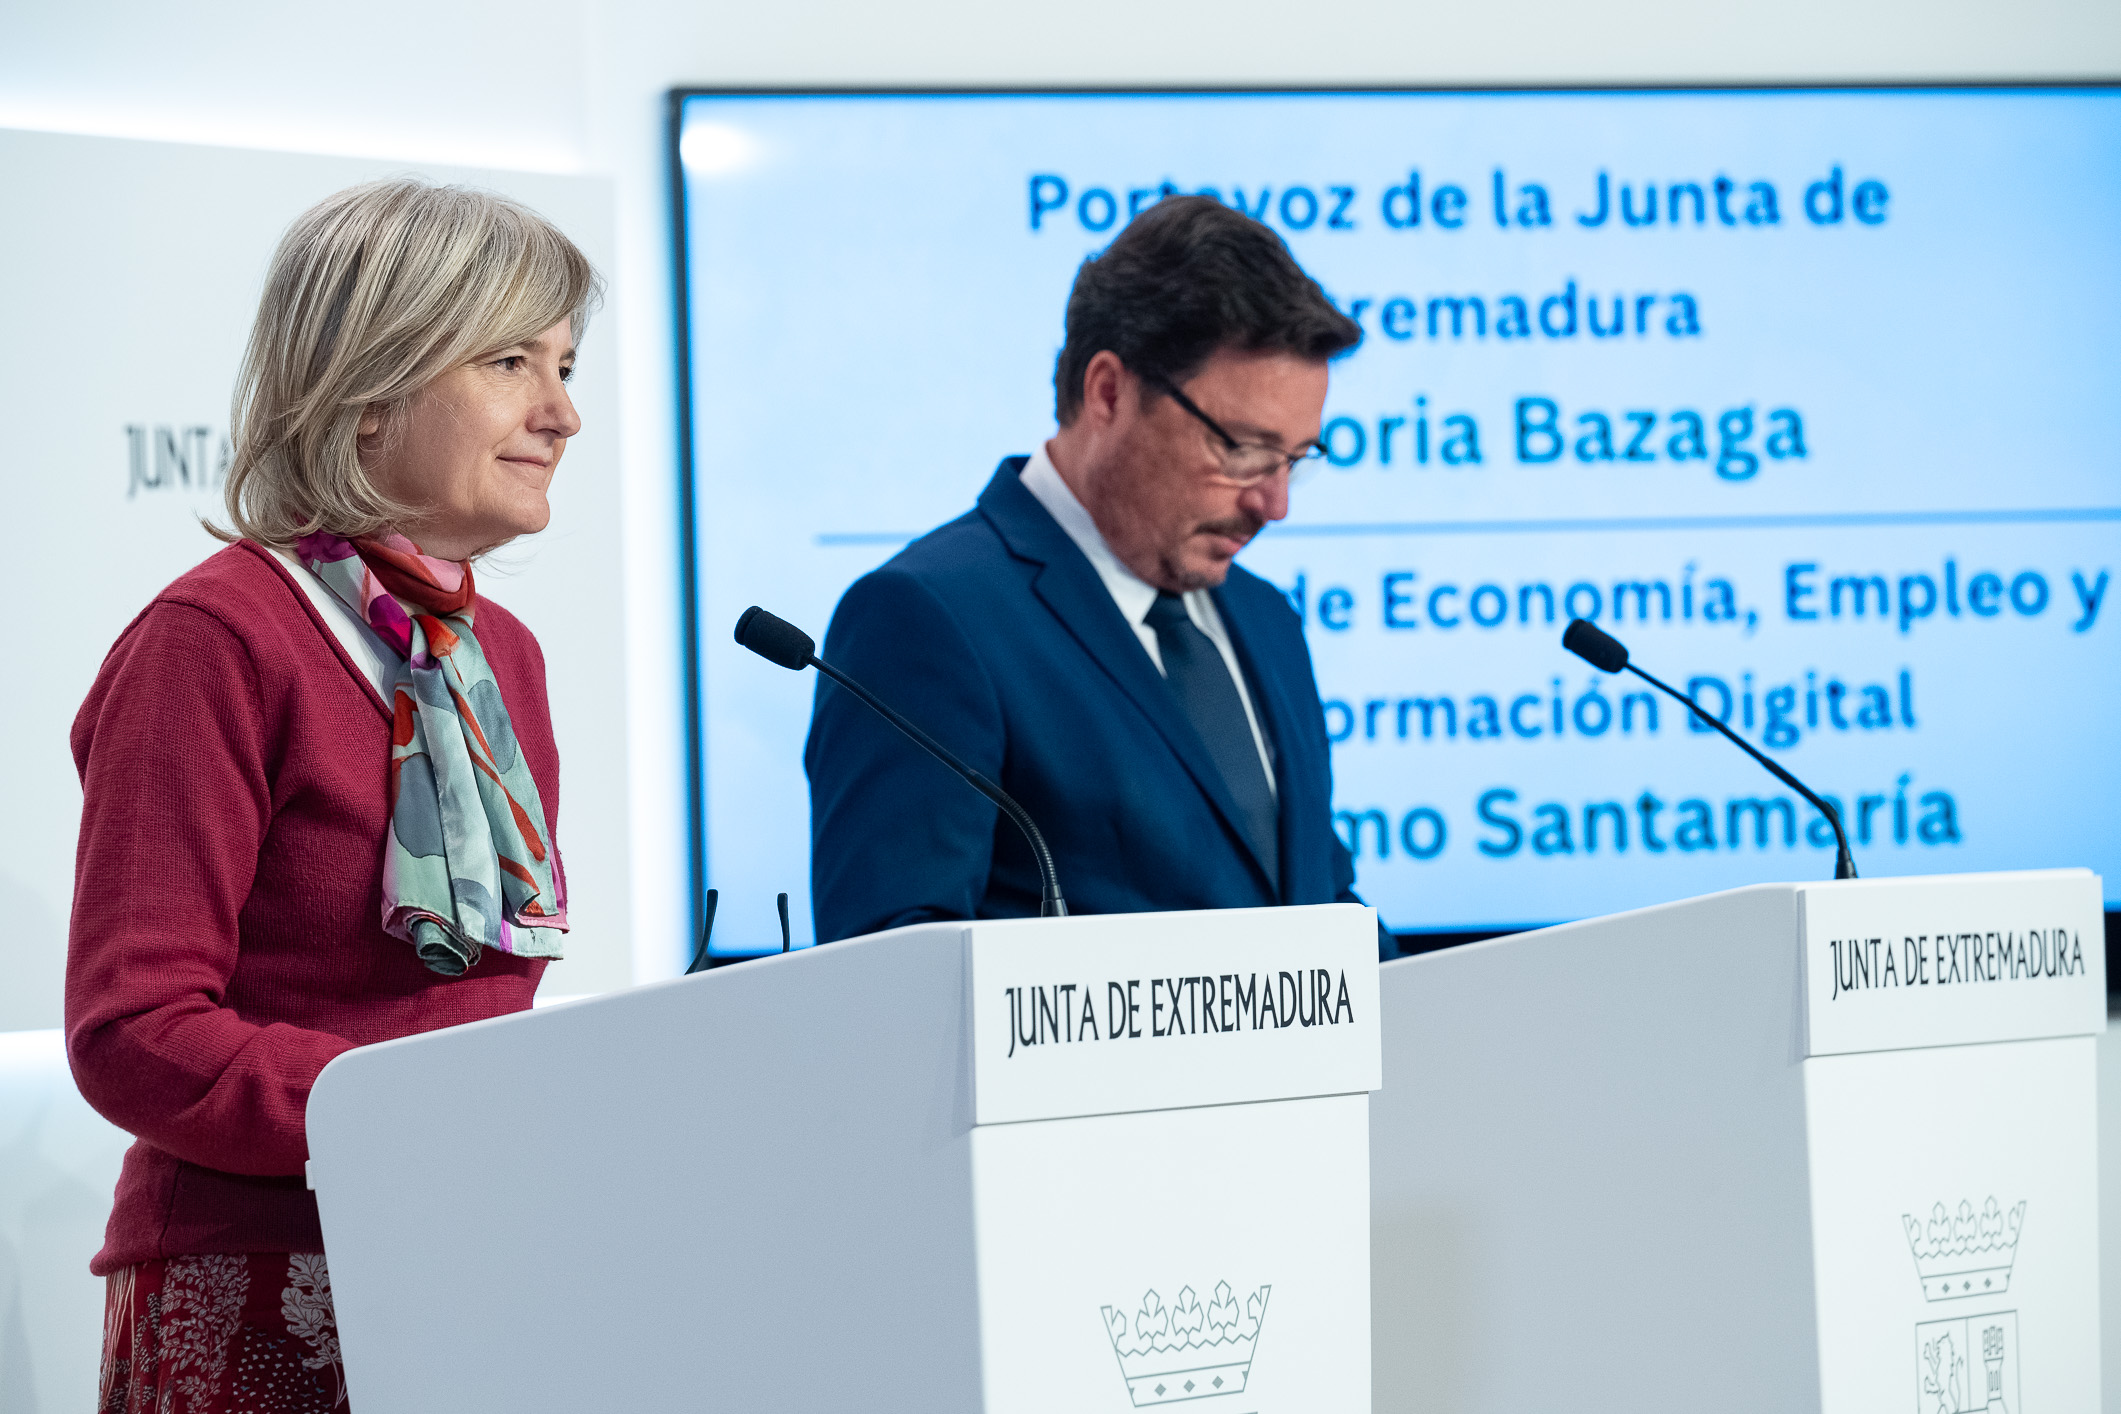 La portavoz de la Junta de Extremadura, Victoria Bazaga; y el consejero de Economía, Empleo y Transformación Digital, Guillermo Santamaría durante la rueda de prensa.